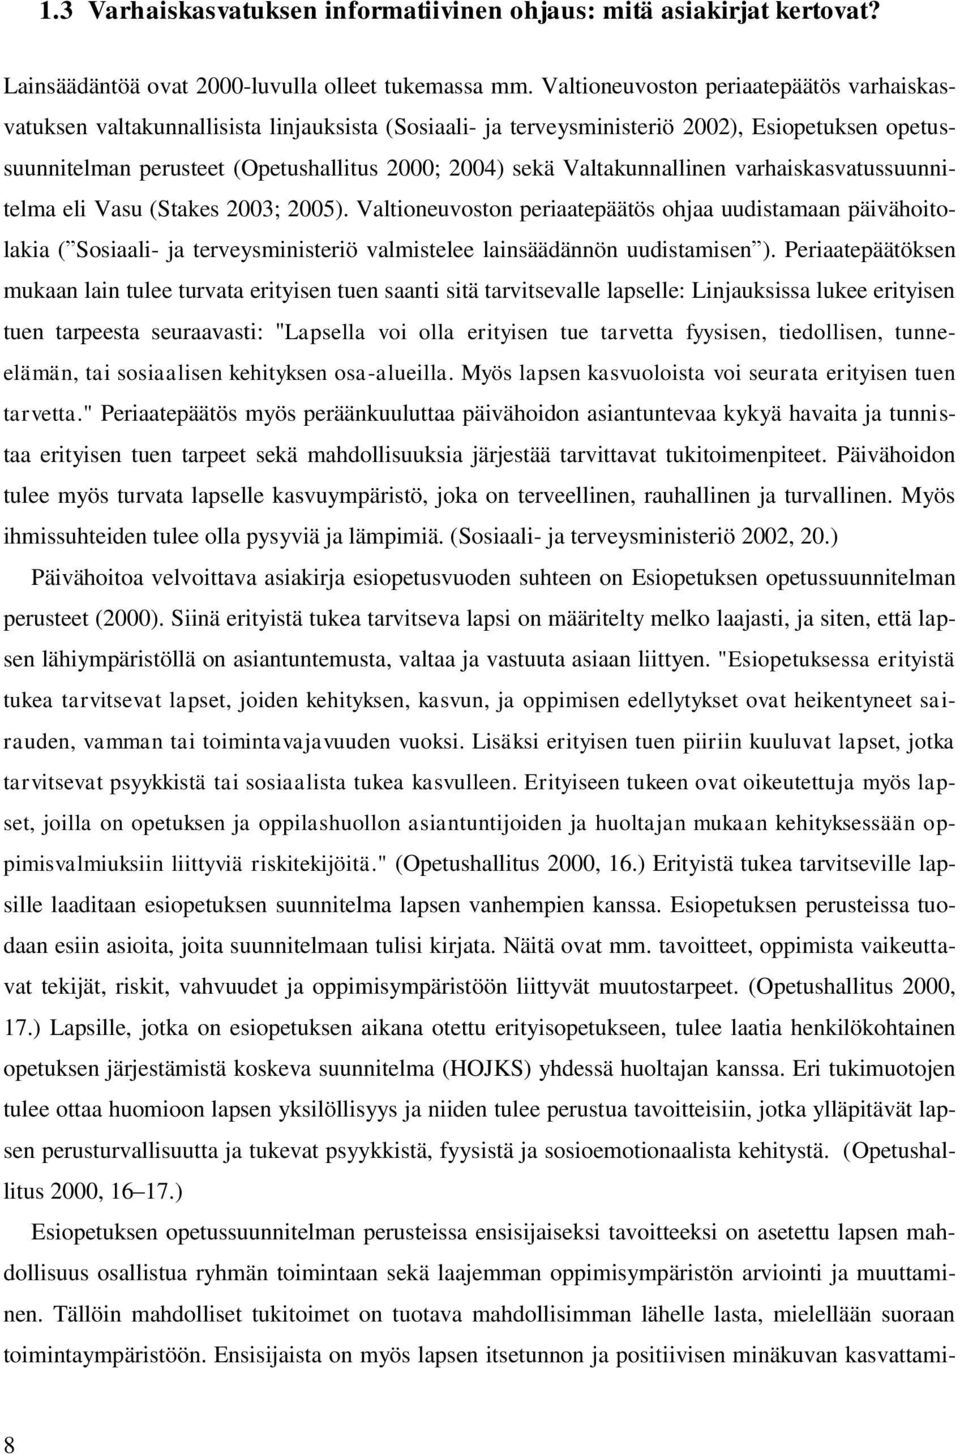 Valtakunnallinen varhaiskasvatussuunnitelma eli Vasu (Stakes 2003; 2005).